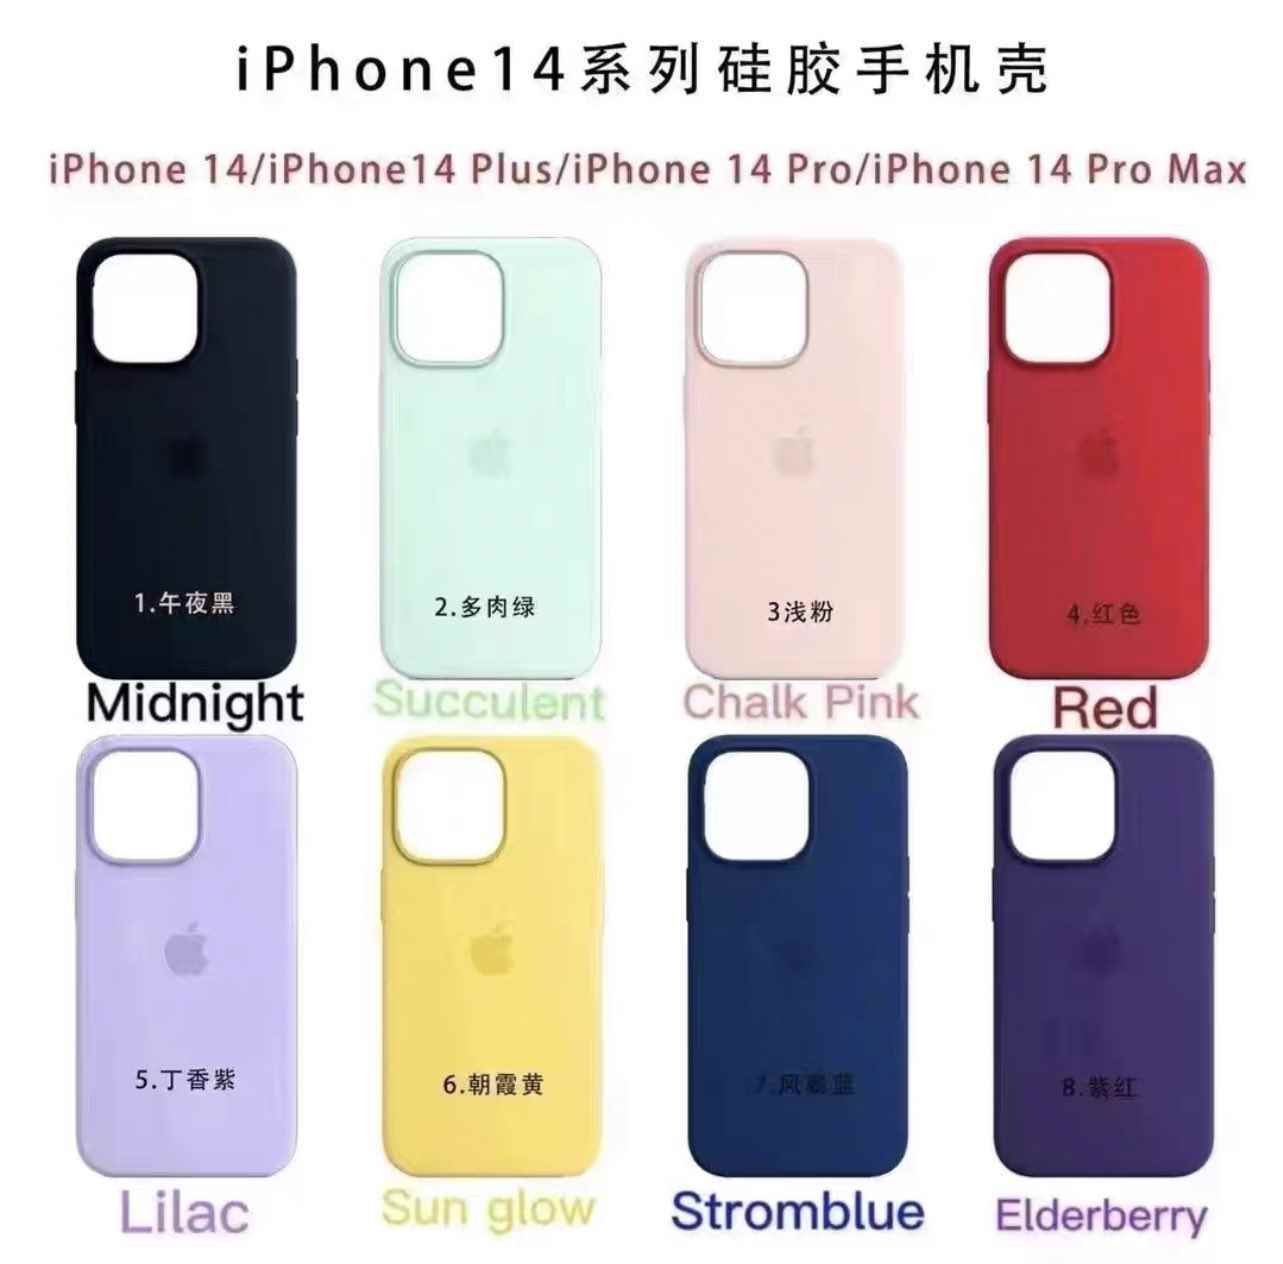 Sekiz farklı renk grubunu gösteren, iPhone 14 kılıflarının reprodüksiyonları için bir pazarlama resmi.